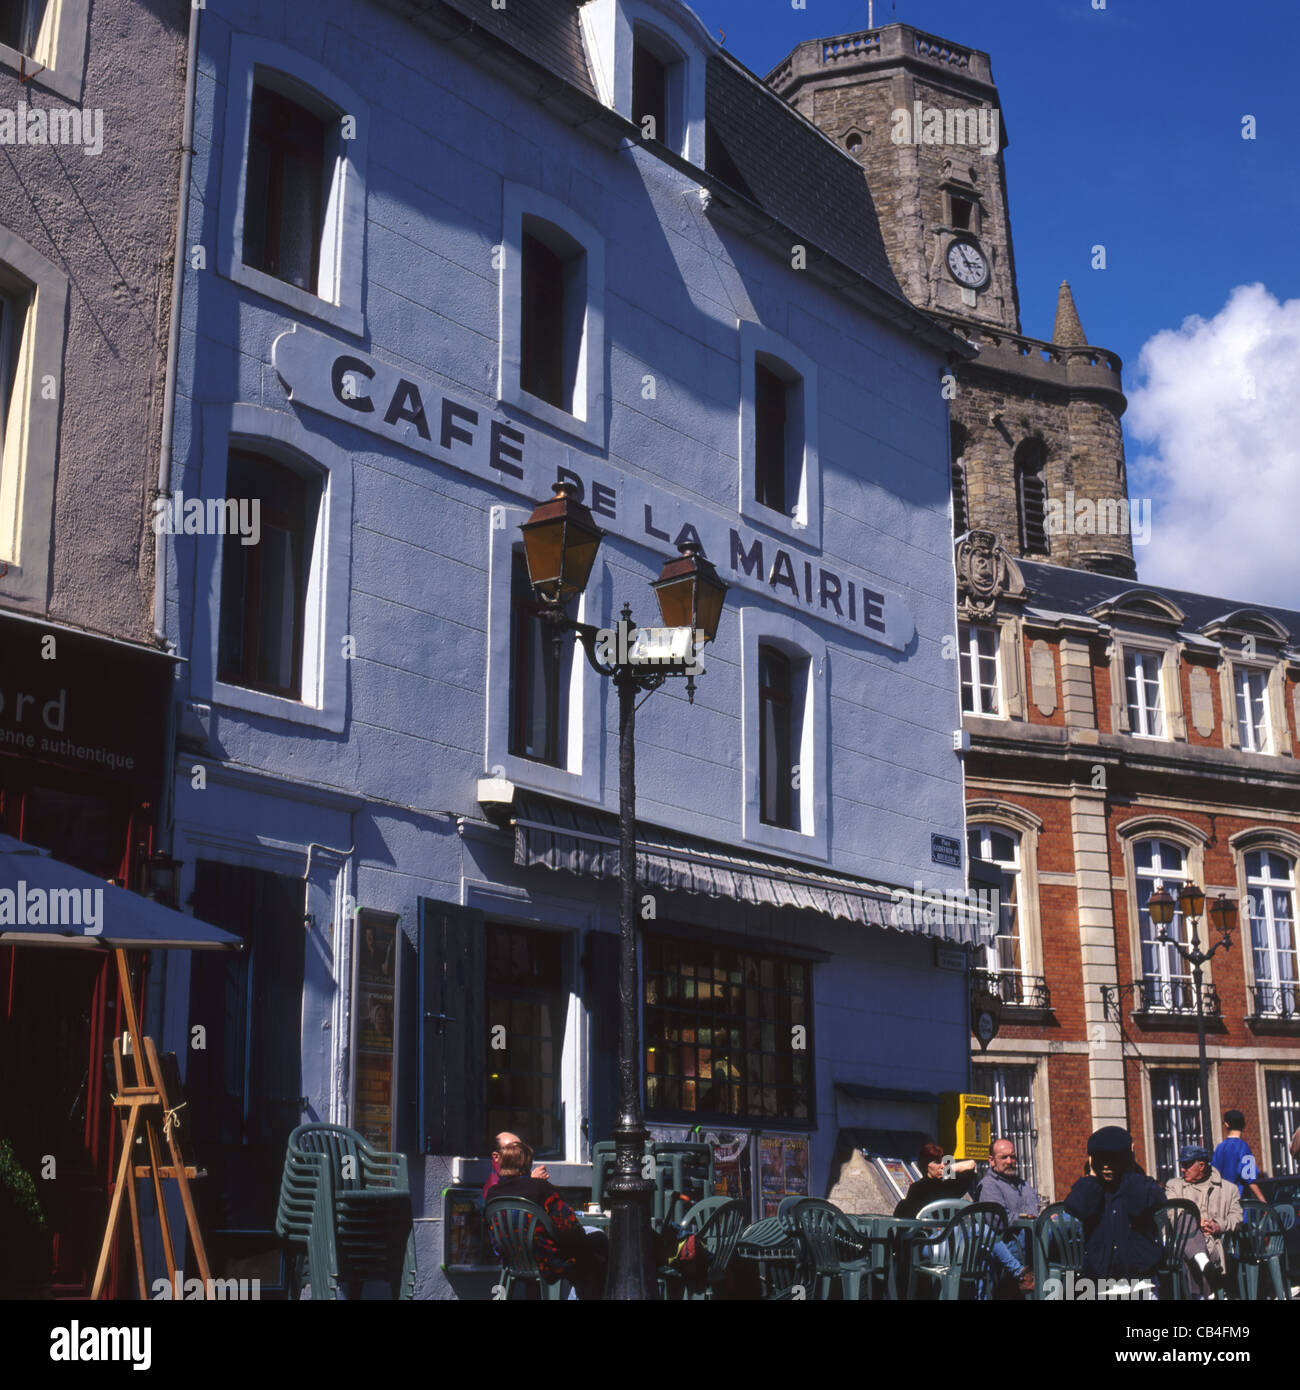 Cafe de la Marie. Pavement Cafe in old town of Boulogne. Pas de Calais. France Stock Photo